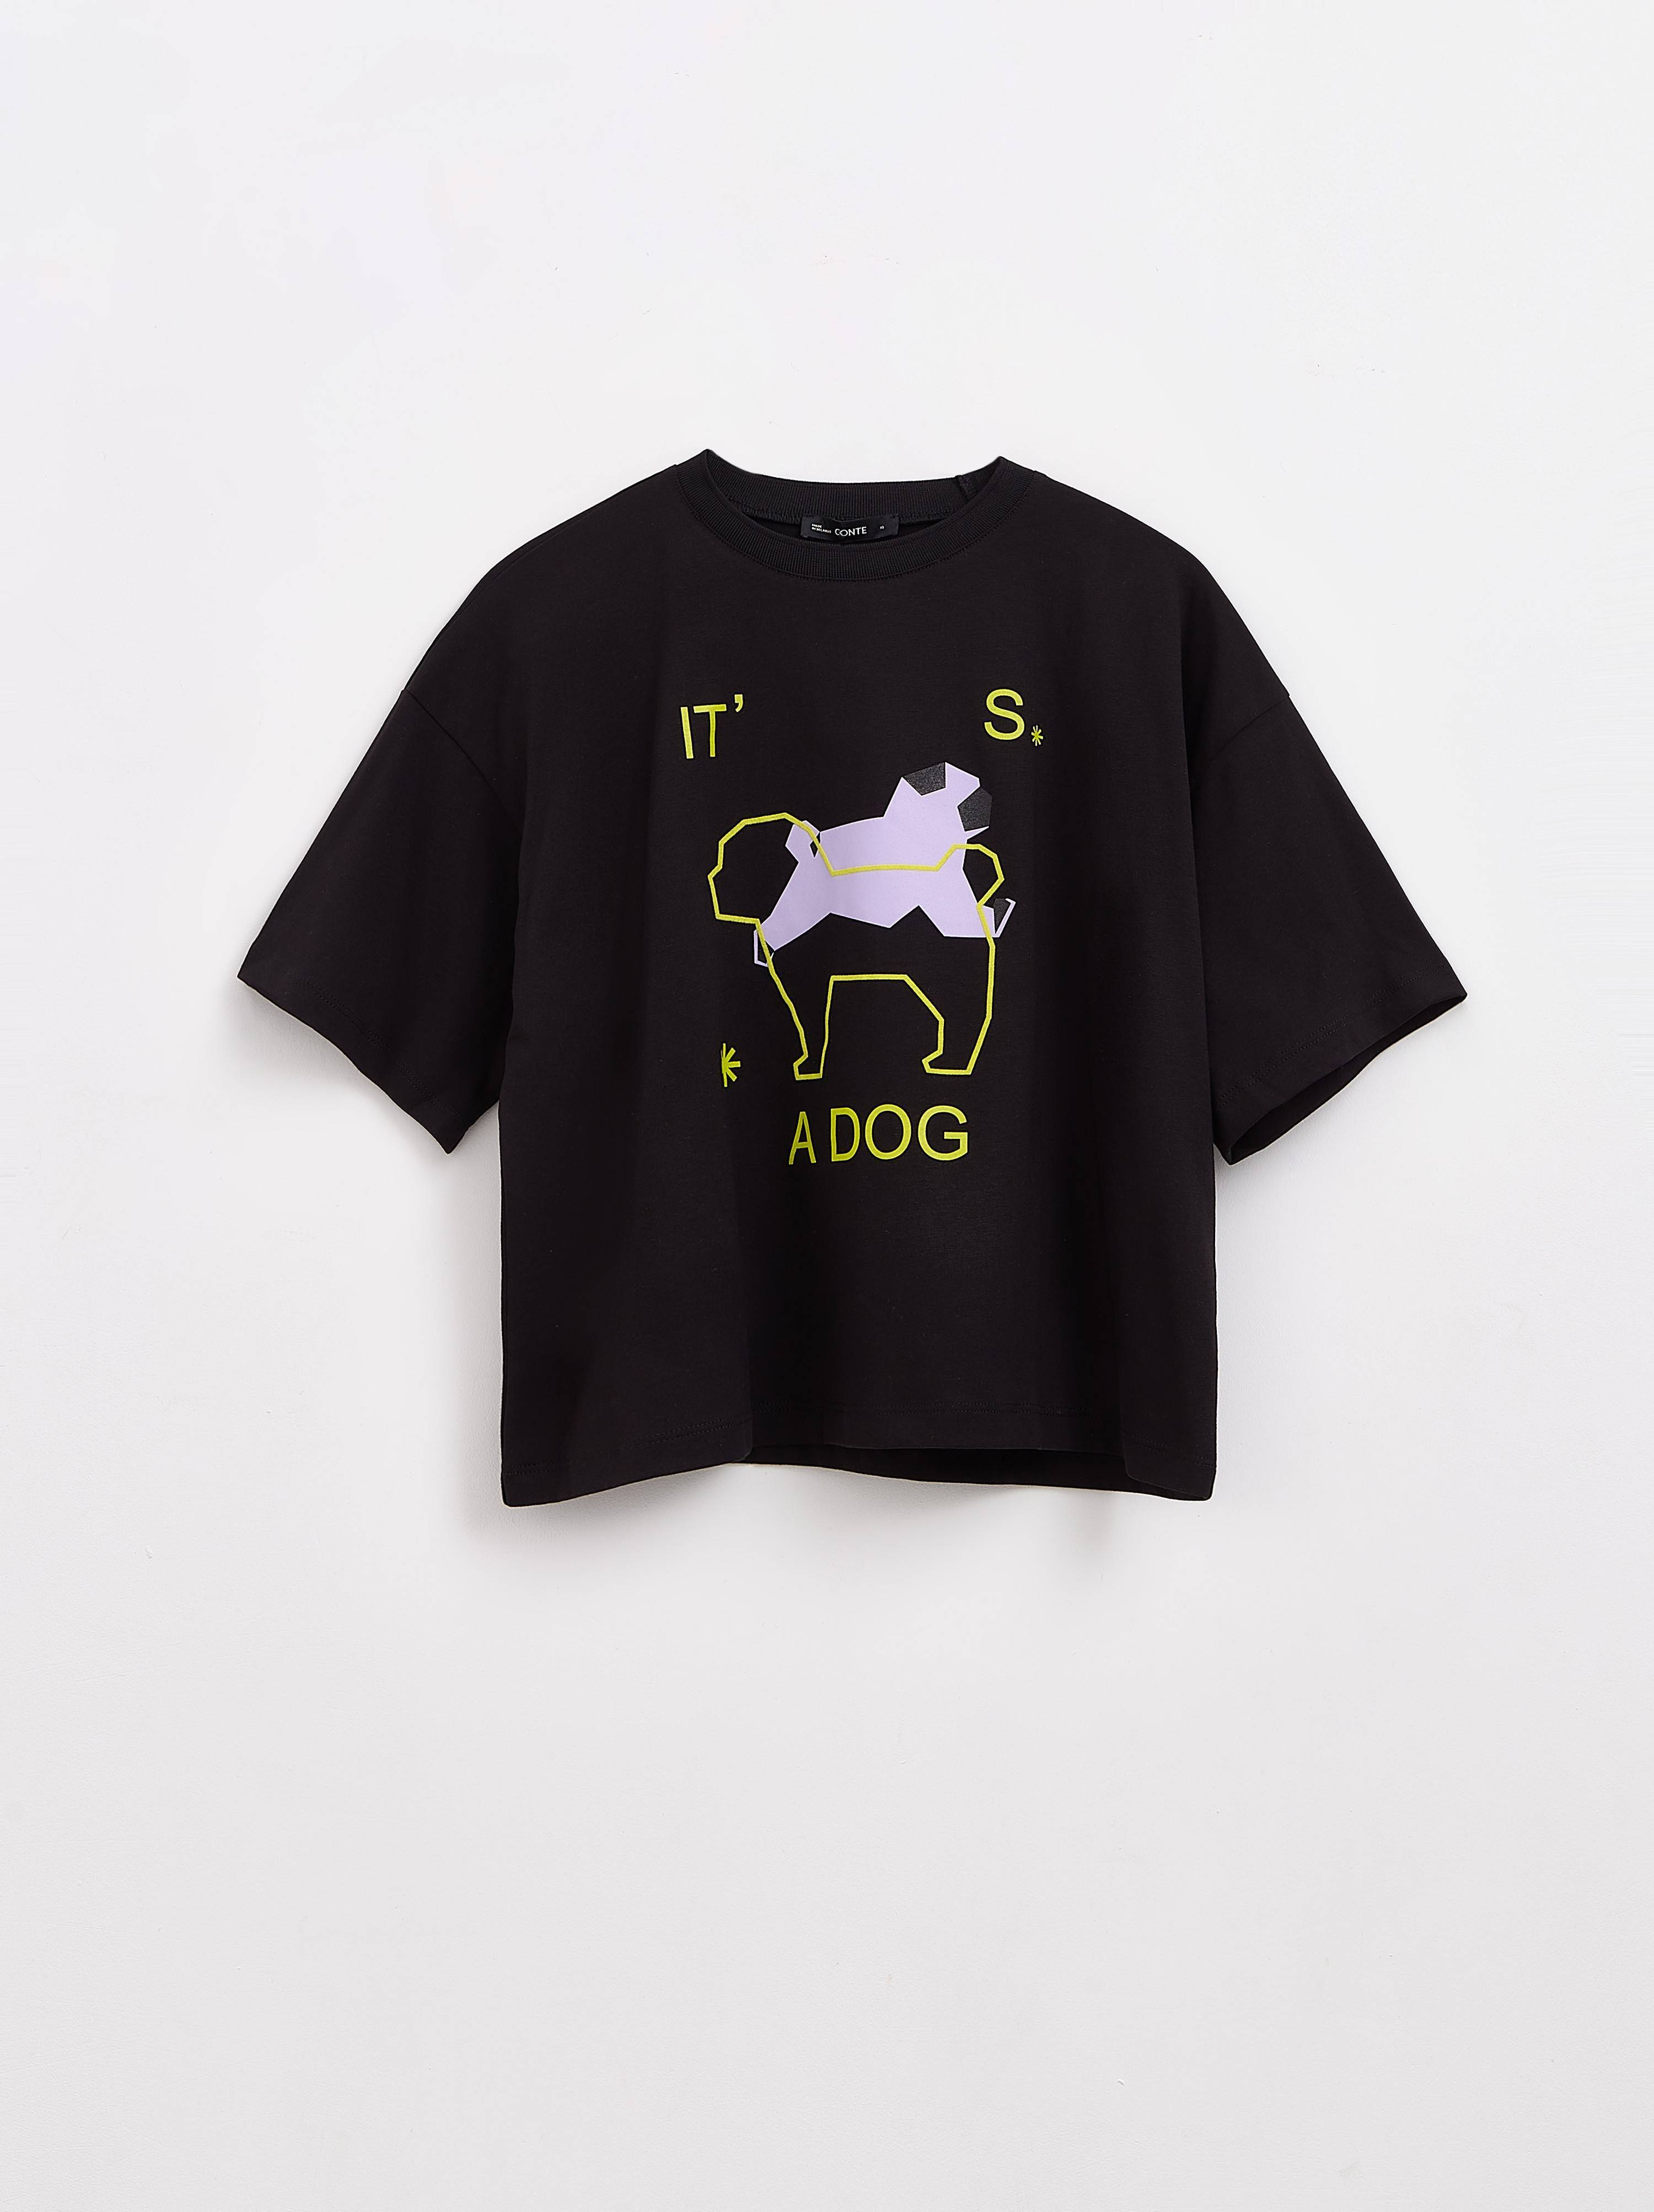 Свободная футболка из хлопка с рисунком «It’s a dog» LD 2149 Conte ⭐️, цвет black, размер 170-84/xs